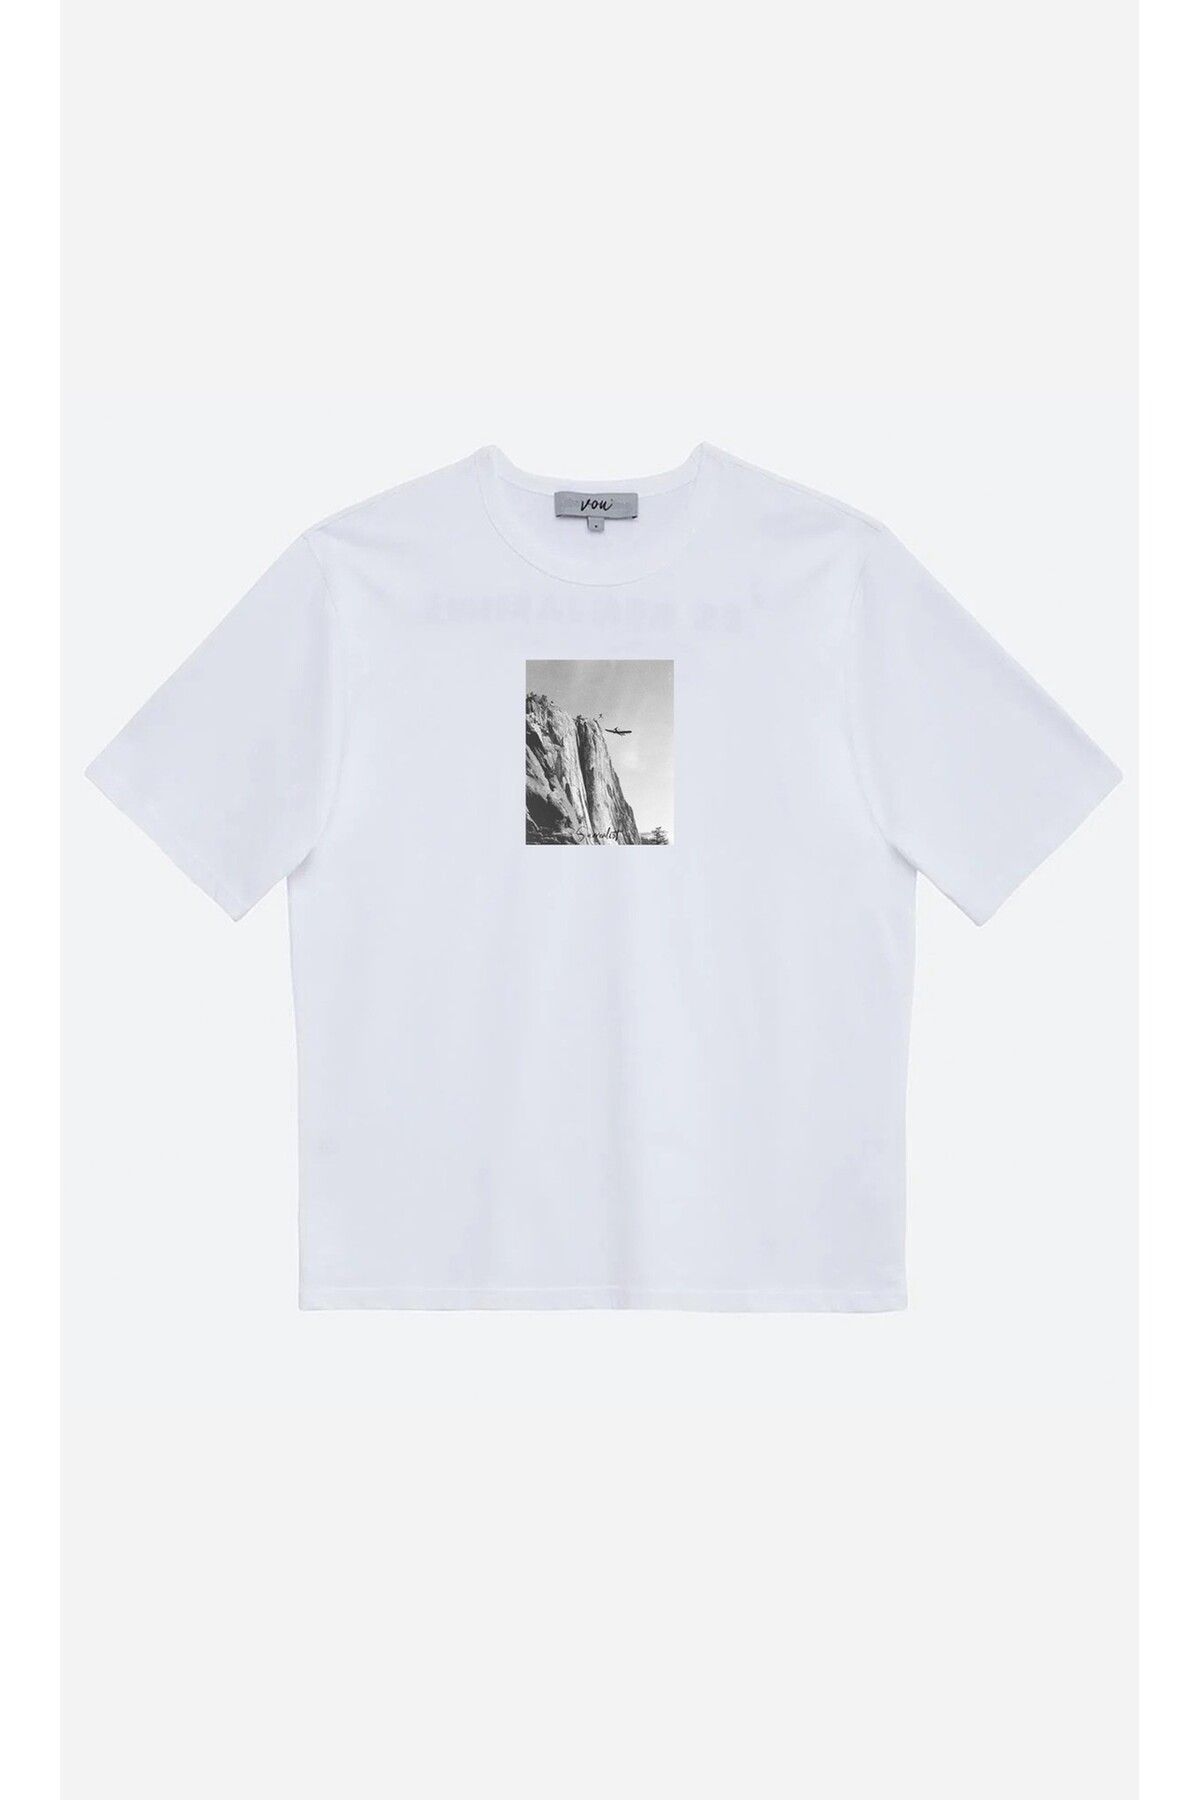 VOU 1030- Surrealist Oversize Unisex T-Shirt